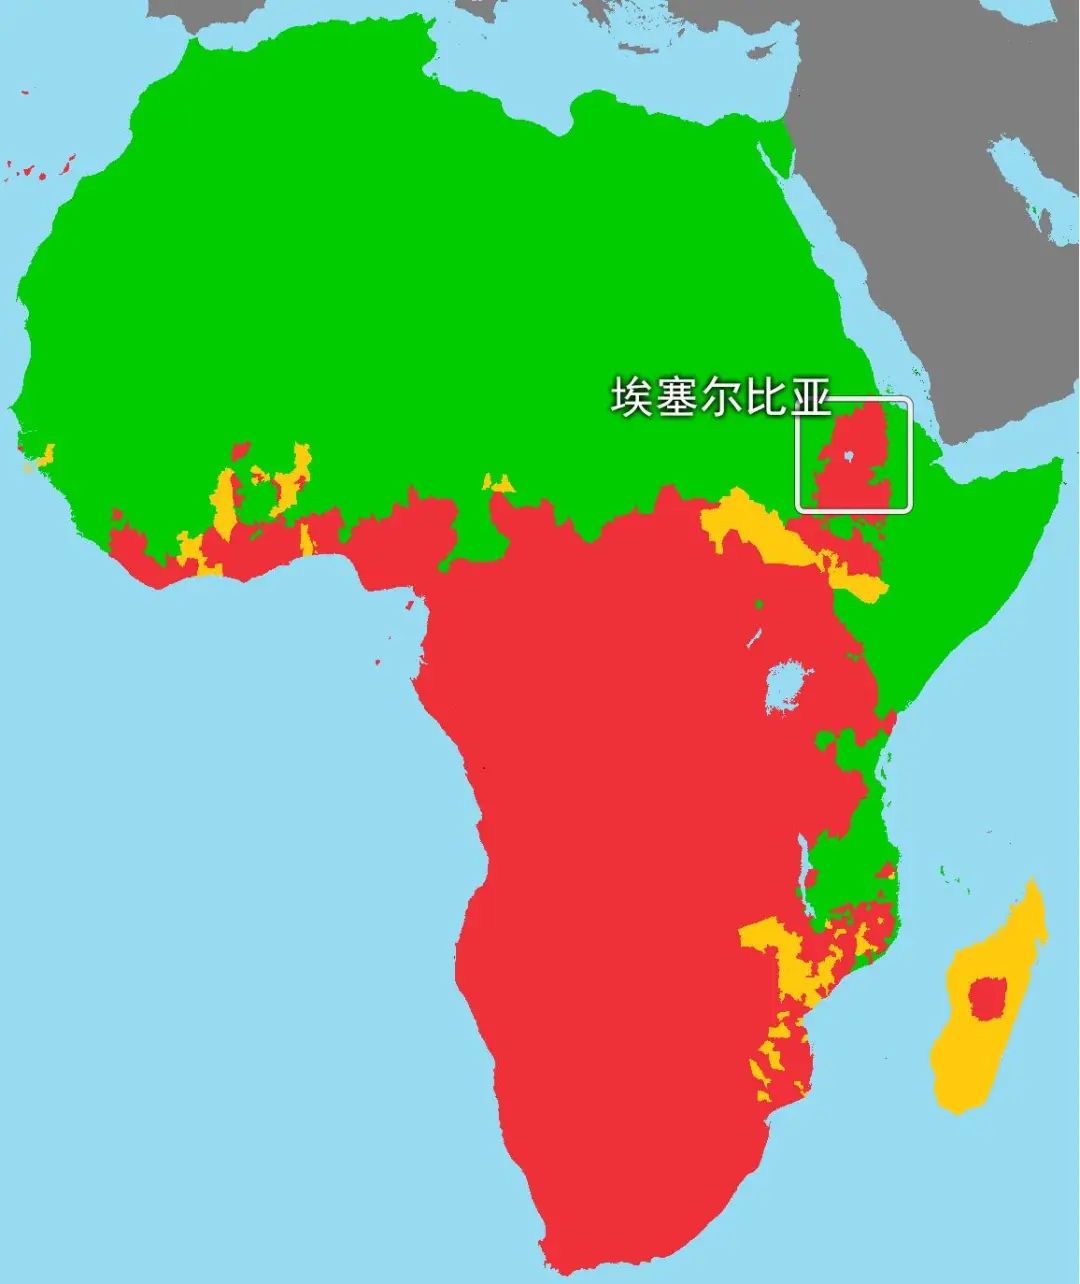 当代非洲宗教版图,绿色为伊斯兰板块,红色为(广义)基督教板块,黄色为